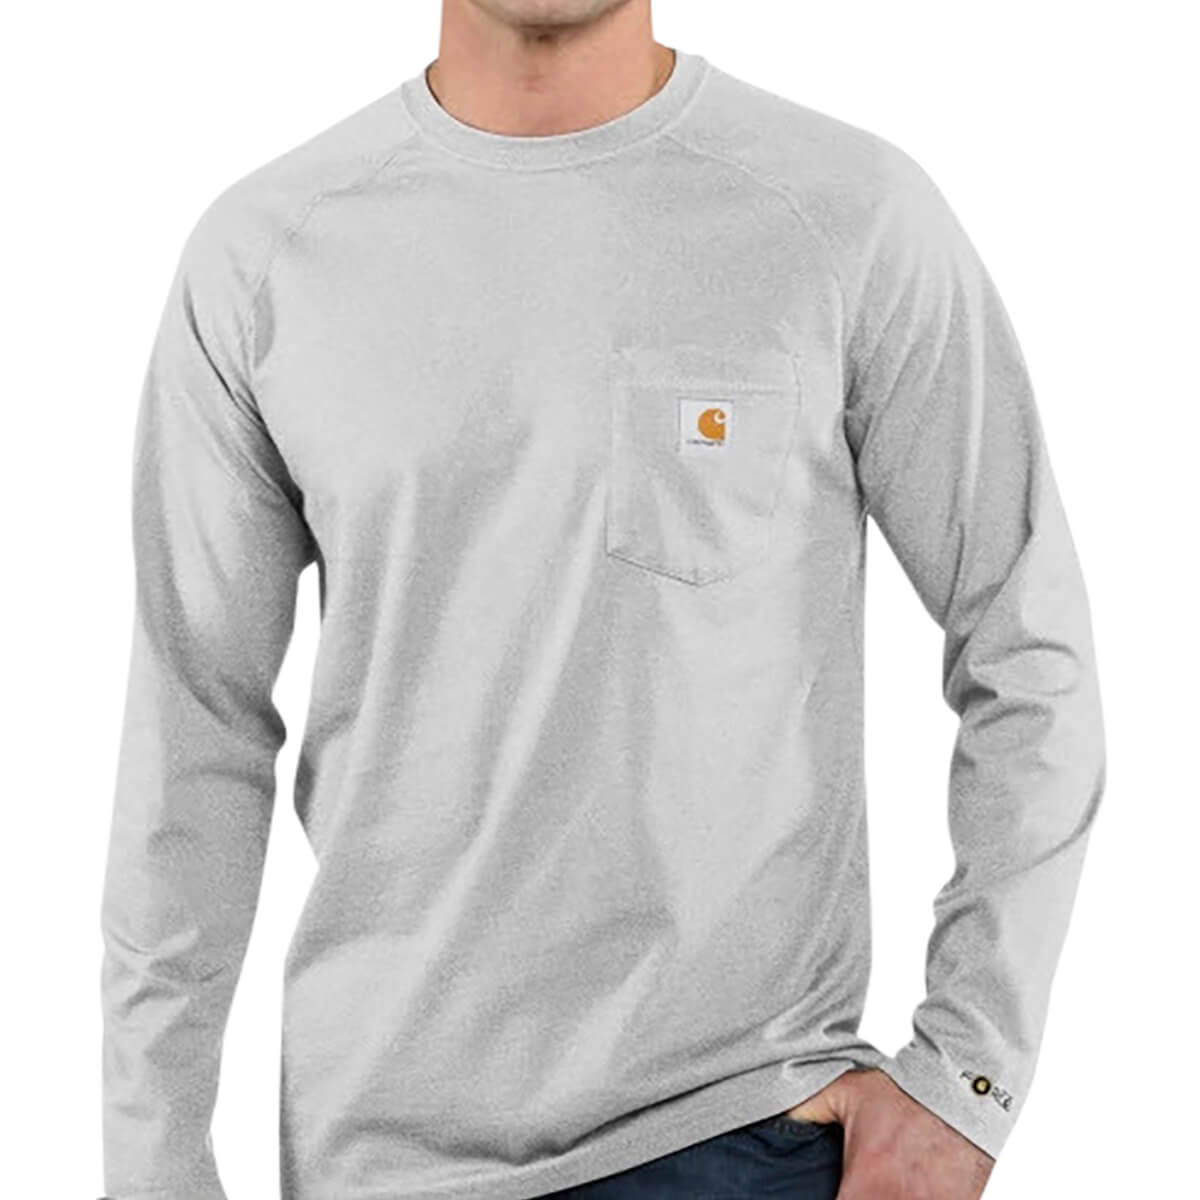 Men's Carhartt Force Cotton Long-Sleeved T-Shirt